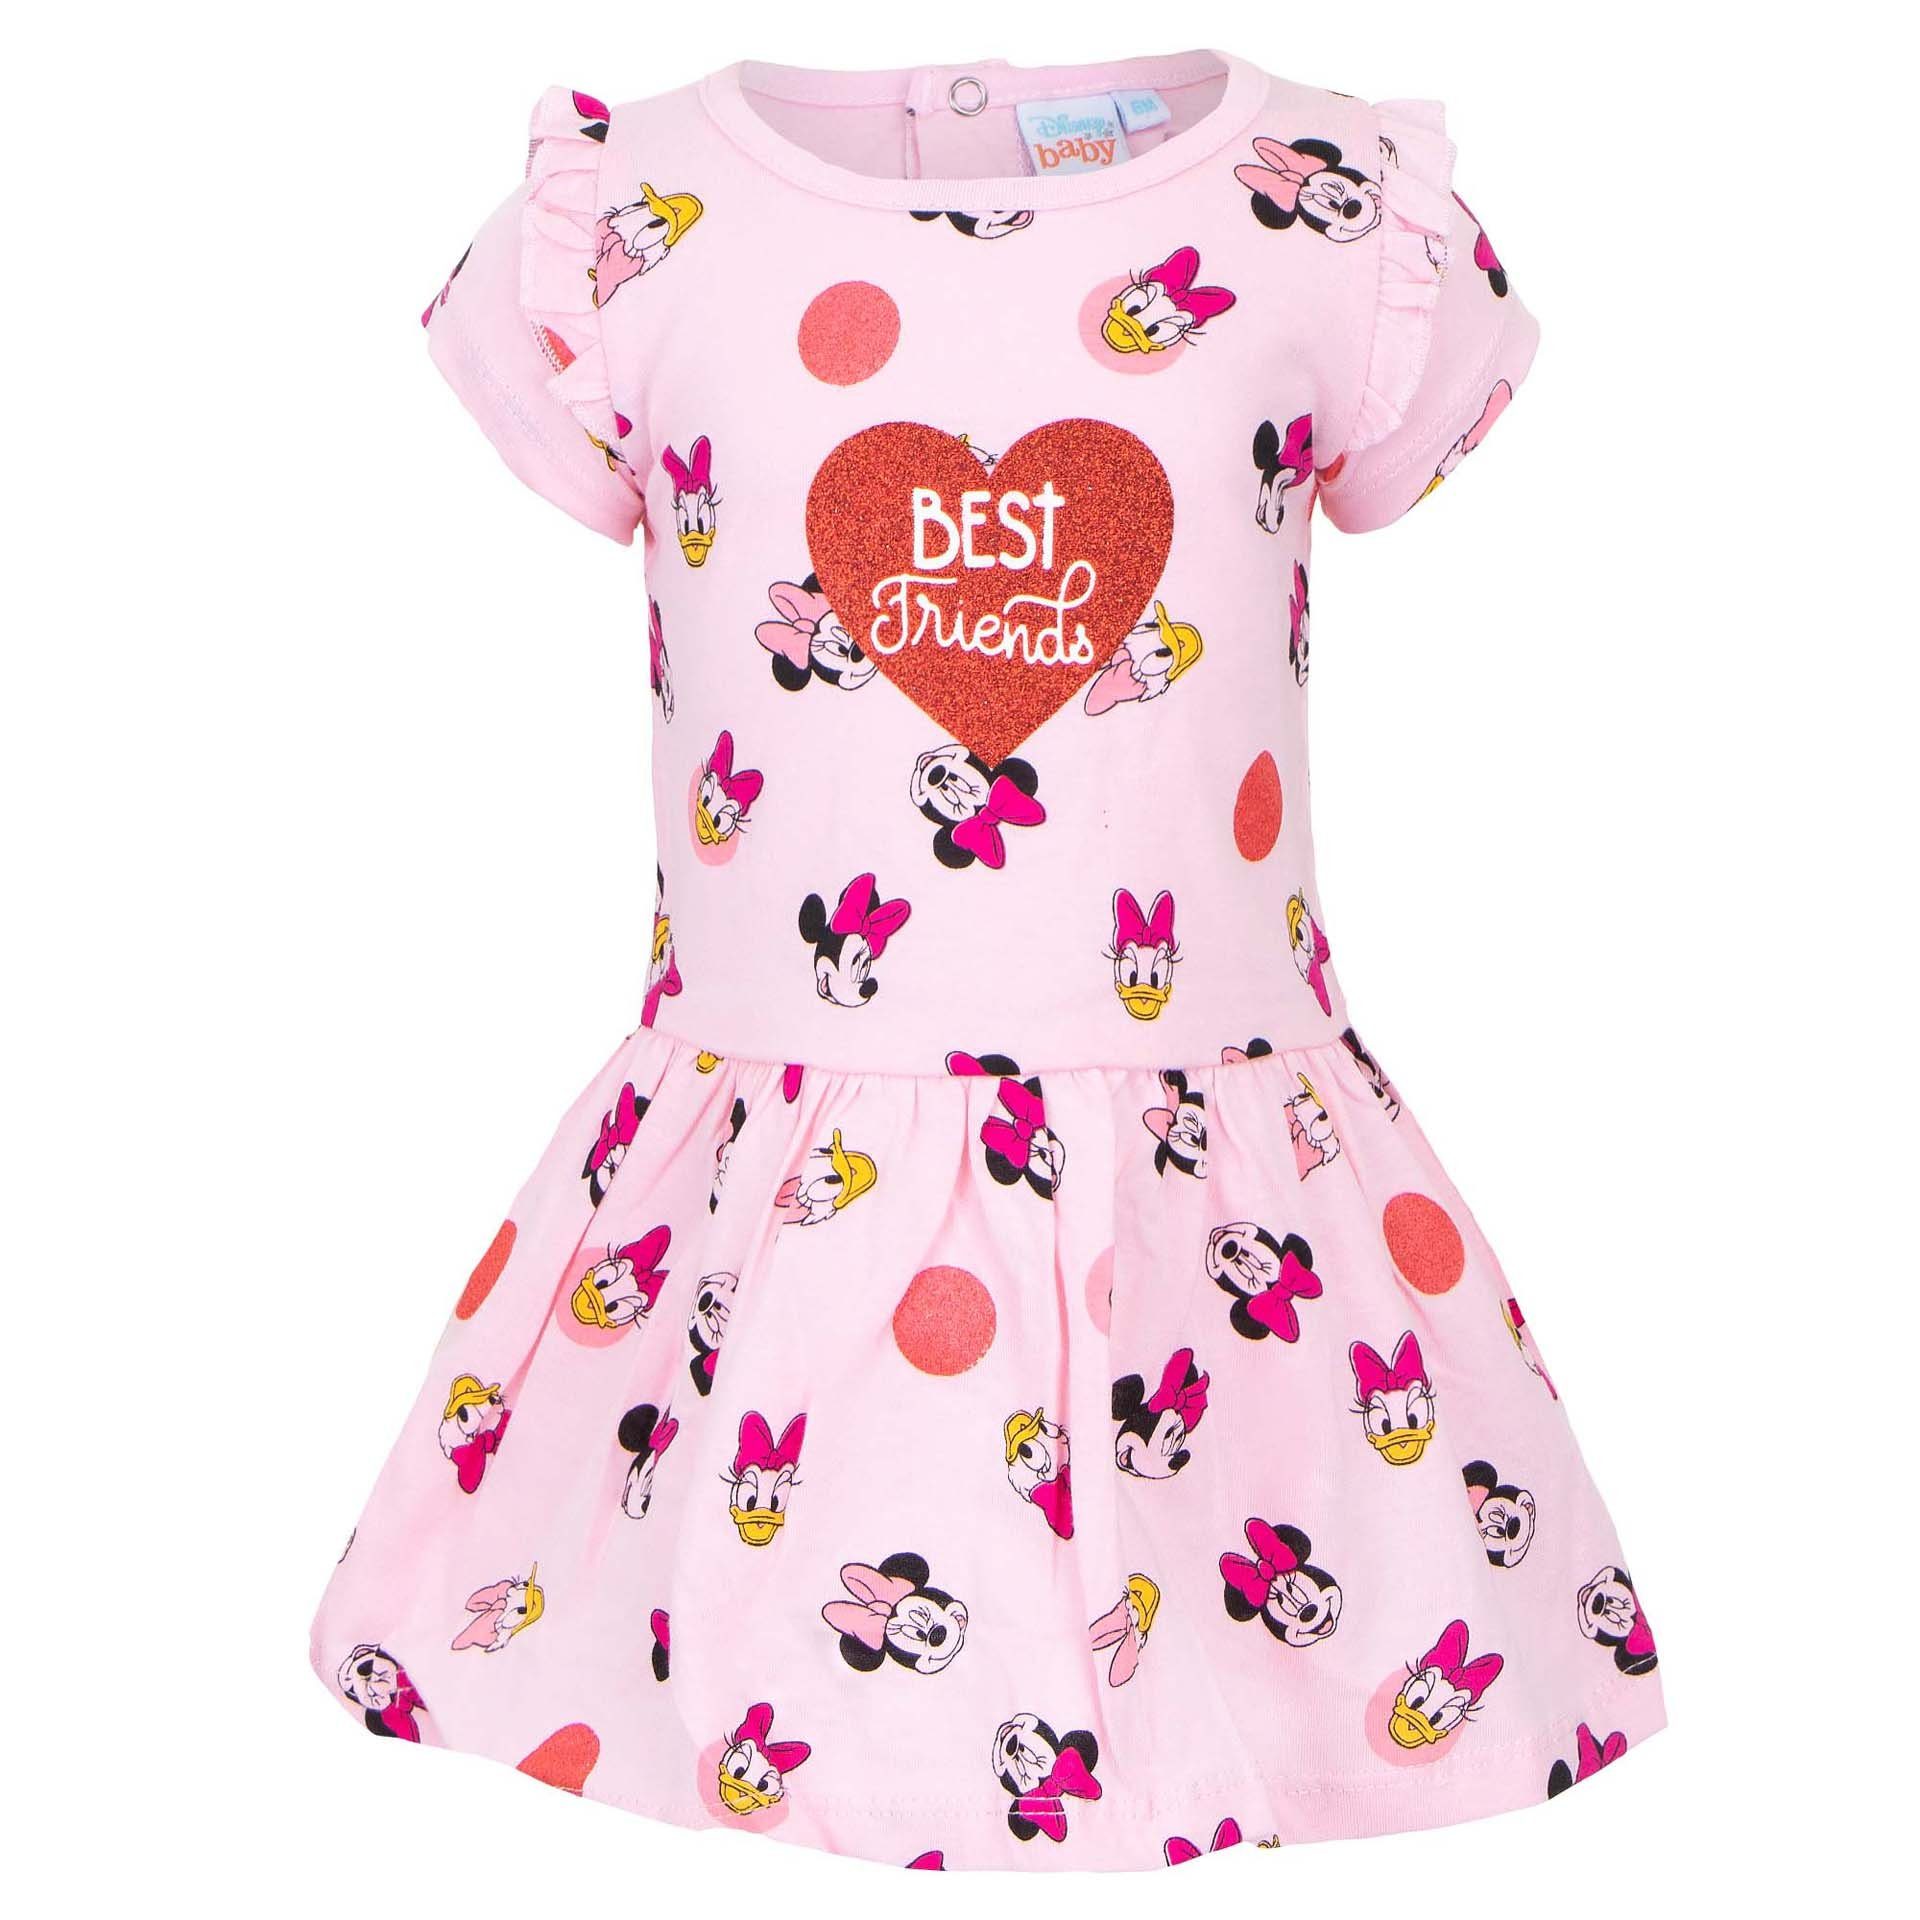 Disney Minnie Mouse Sommerkleid Minnie Maus und Daisy Duck Baby Kleid Gr. 68 bis 86, 100% baumwolle